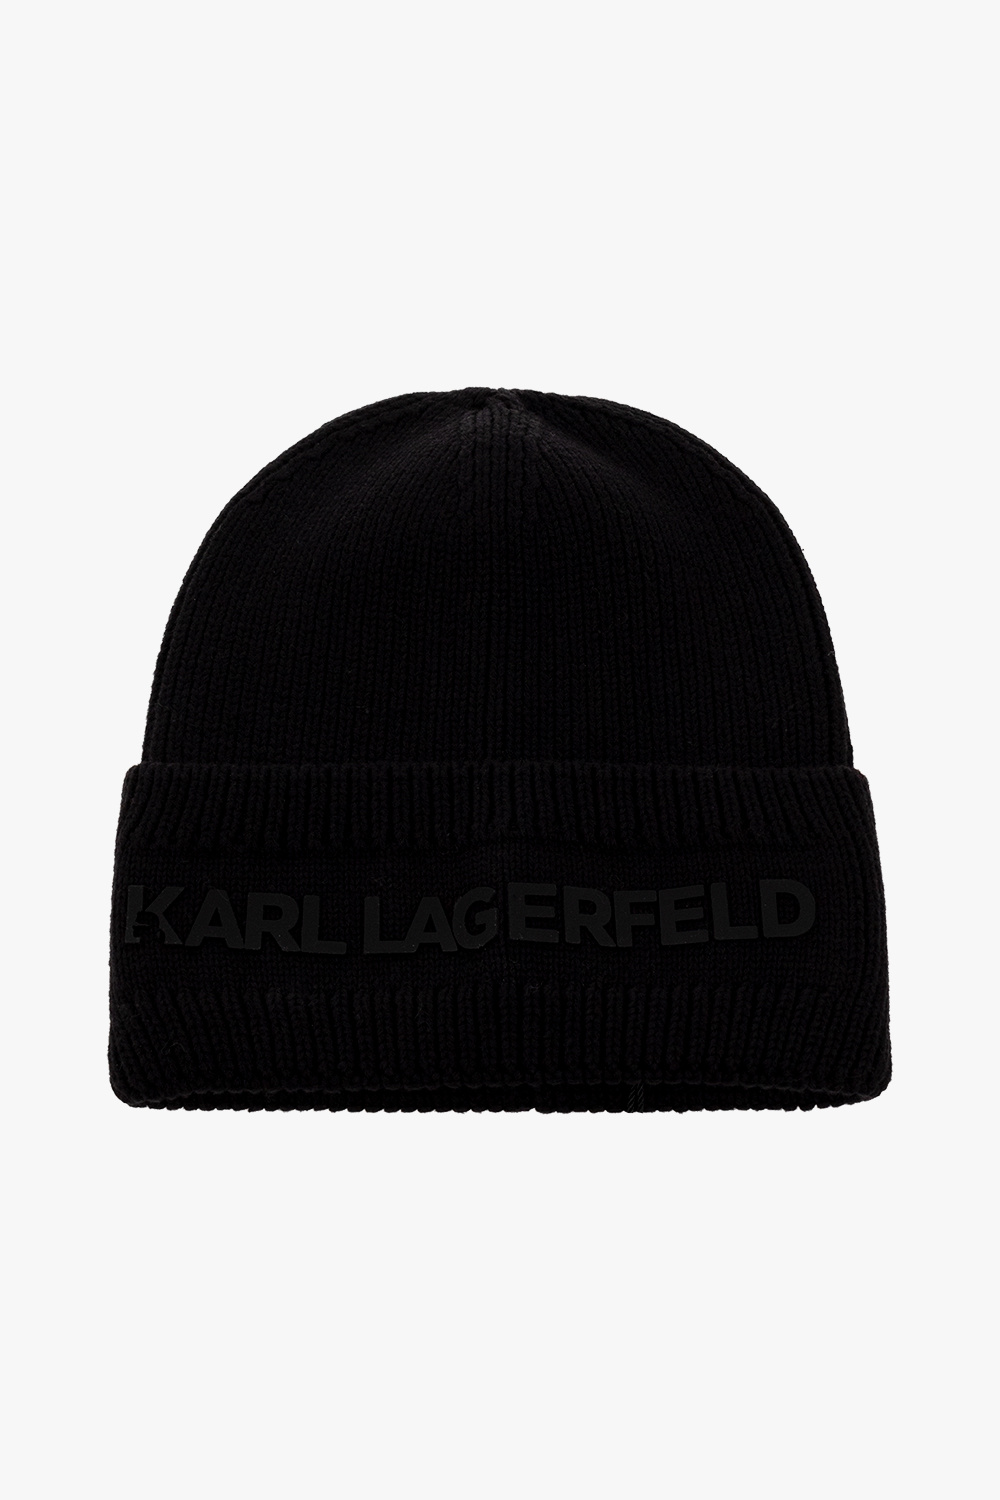 Karl Lagerfeld Kids clothing eyewear caps Phone Accessories